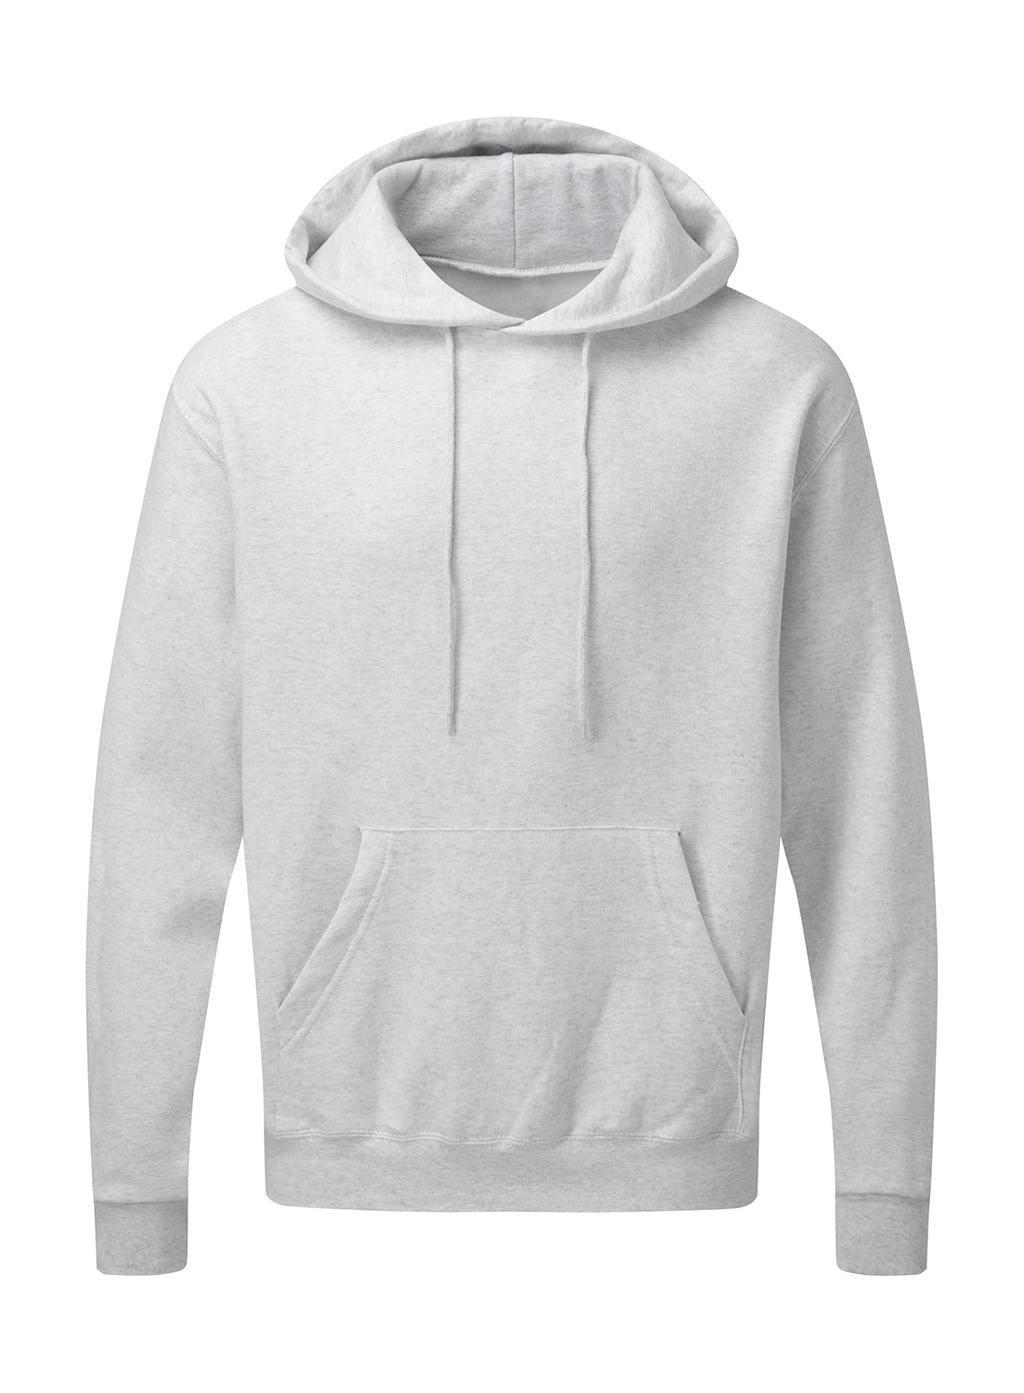 Hooded Sweatshirt Men zum Besticken und Bedrucken in der Farbe Ash Grey mit Ihren Logo, Schriftzug oder Motiv.